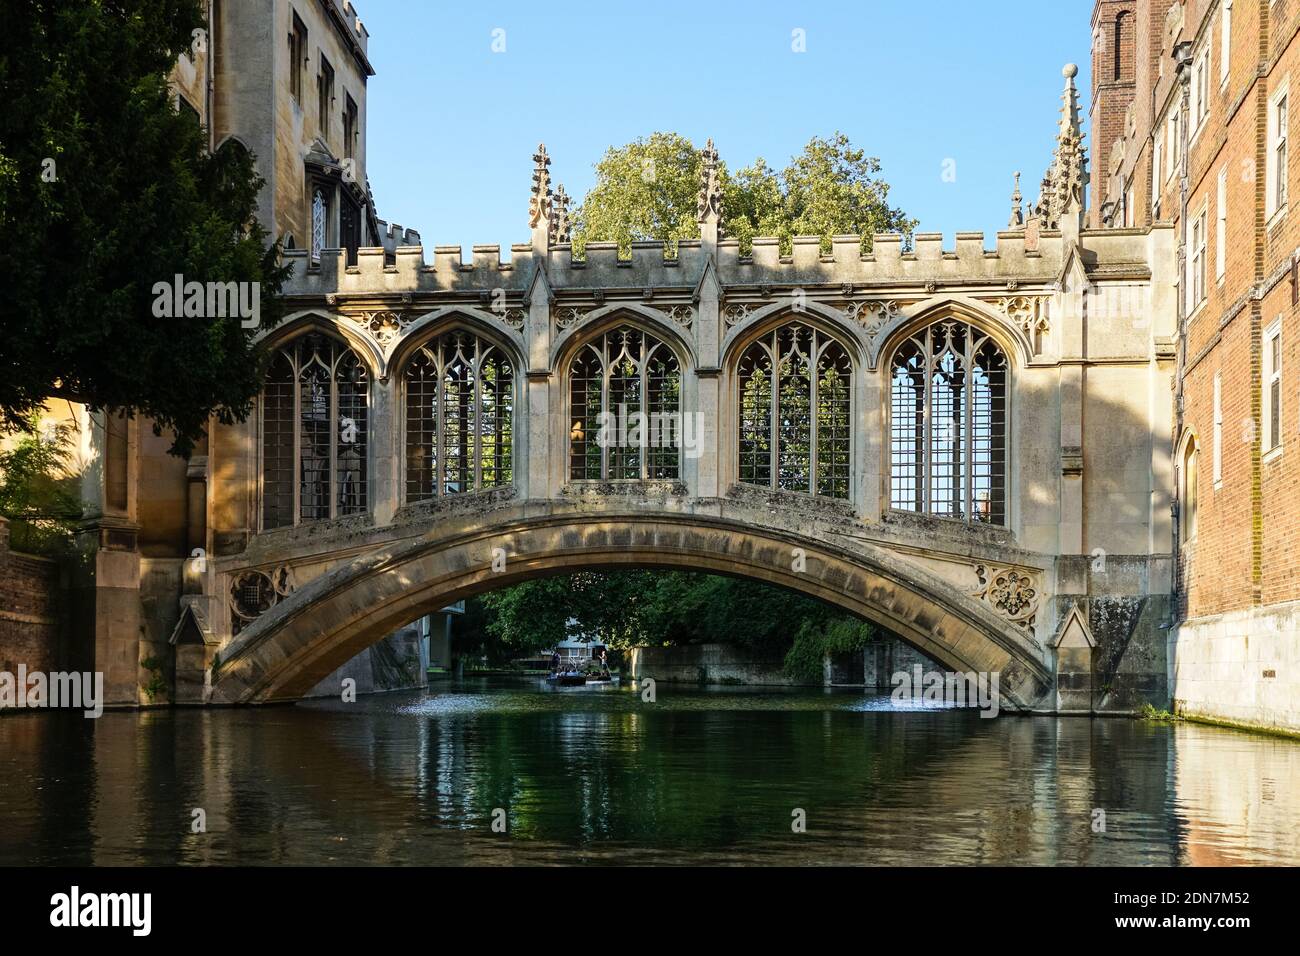 Le pont des Soupirs au-dessus de la rivière Cam à Cambridge, Cambridge Cambridgeshire Angleterre Royaume-Uni Banque D'Images